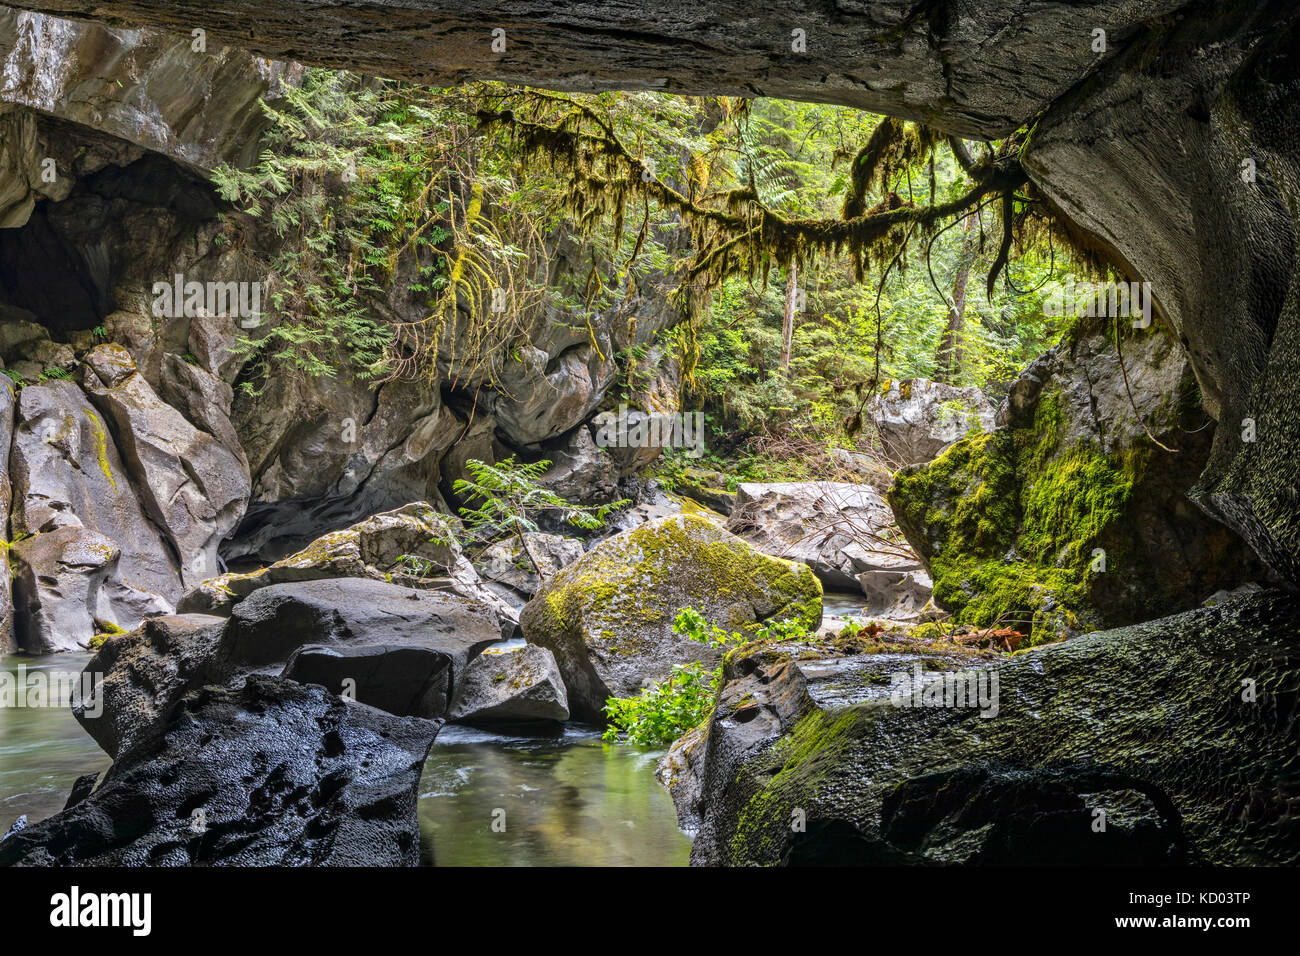 Atluck creek coupant à travers la création de calcaire en fonte huson pont naturel caverne dans peu d'huson grotte parc régional, nord de l'île de Vancouver, Colombie-Britannique, Canada Banque D'Images